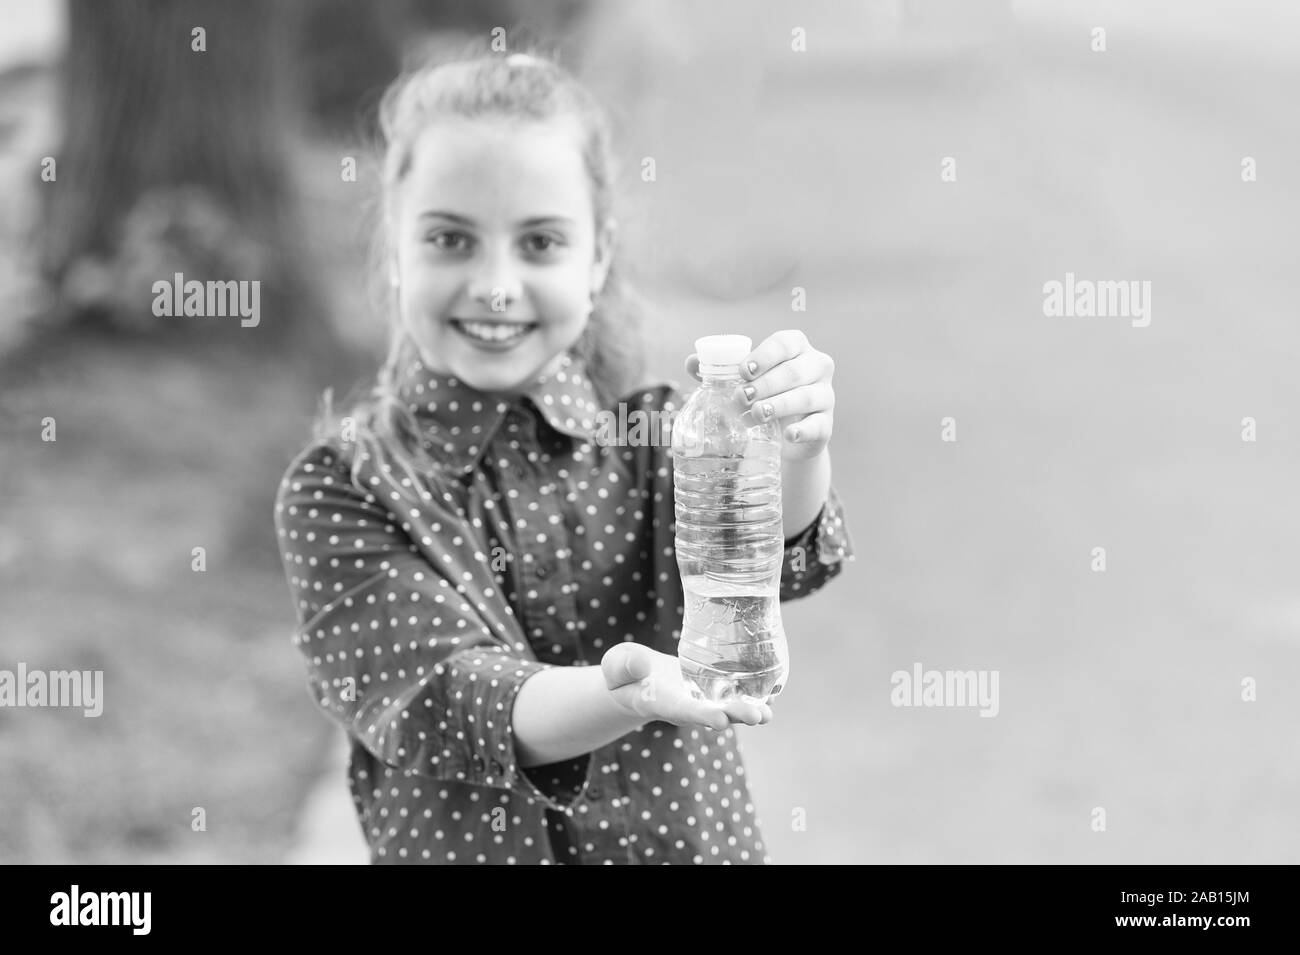 Warten Sie nicht, Hydrat. Flasche Trinkwasser selektiven Fokus. Kleines Mädchen Trinkwasser Durst zu stillen. Durstiges Kind. Durst oder Dehydratation. Durstlöschend. Durst Konzept. Stockfoto